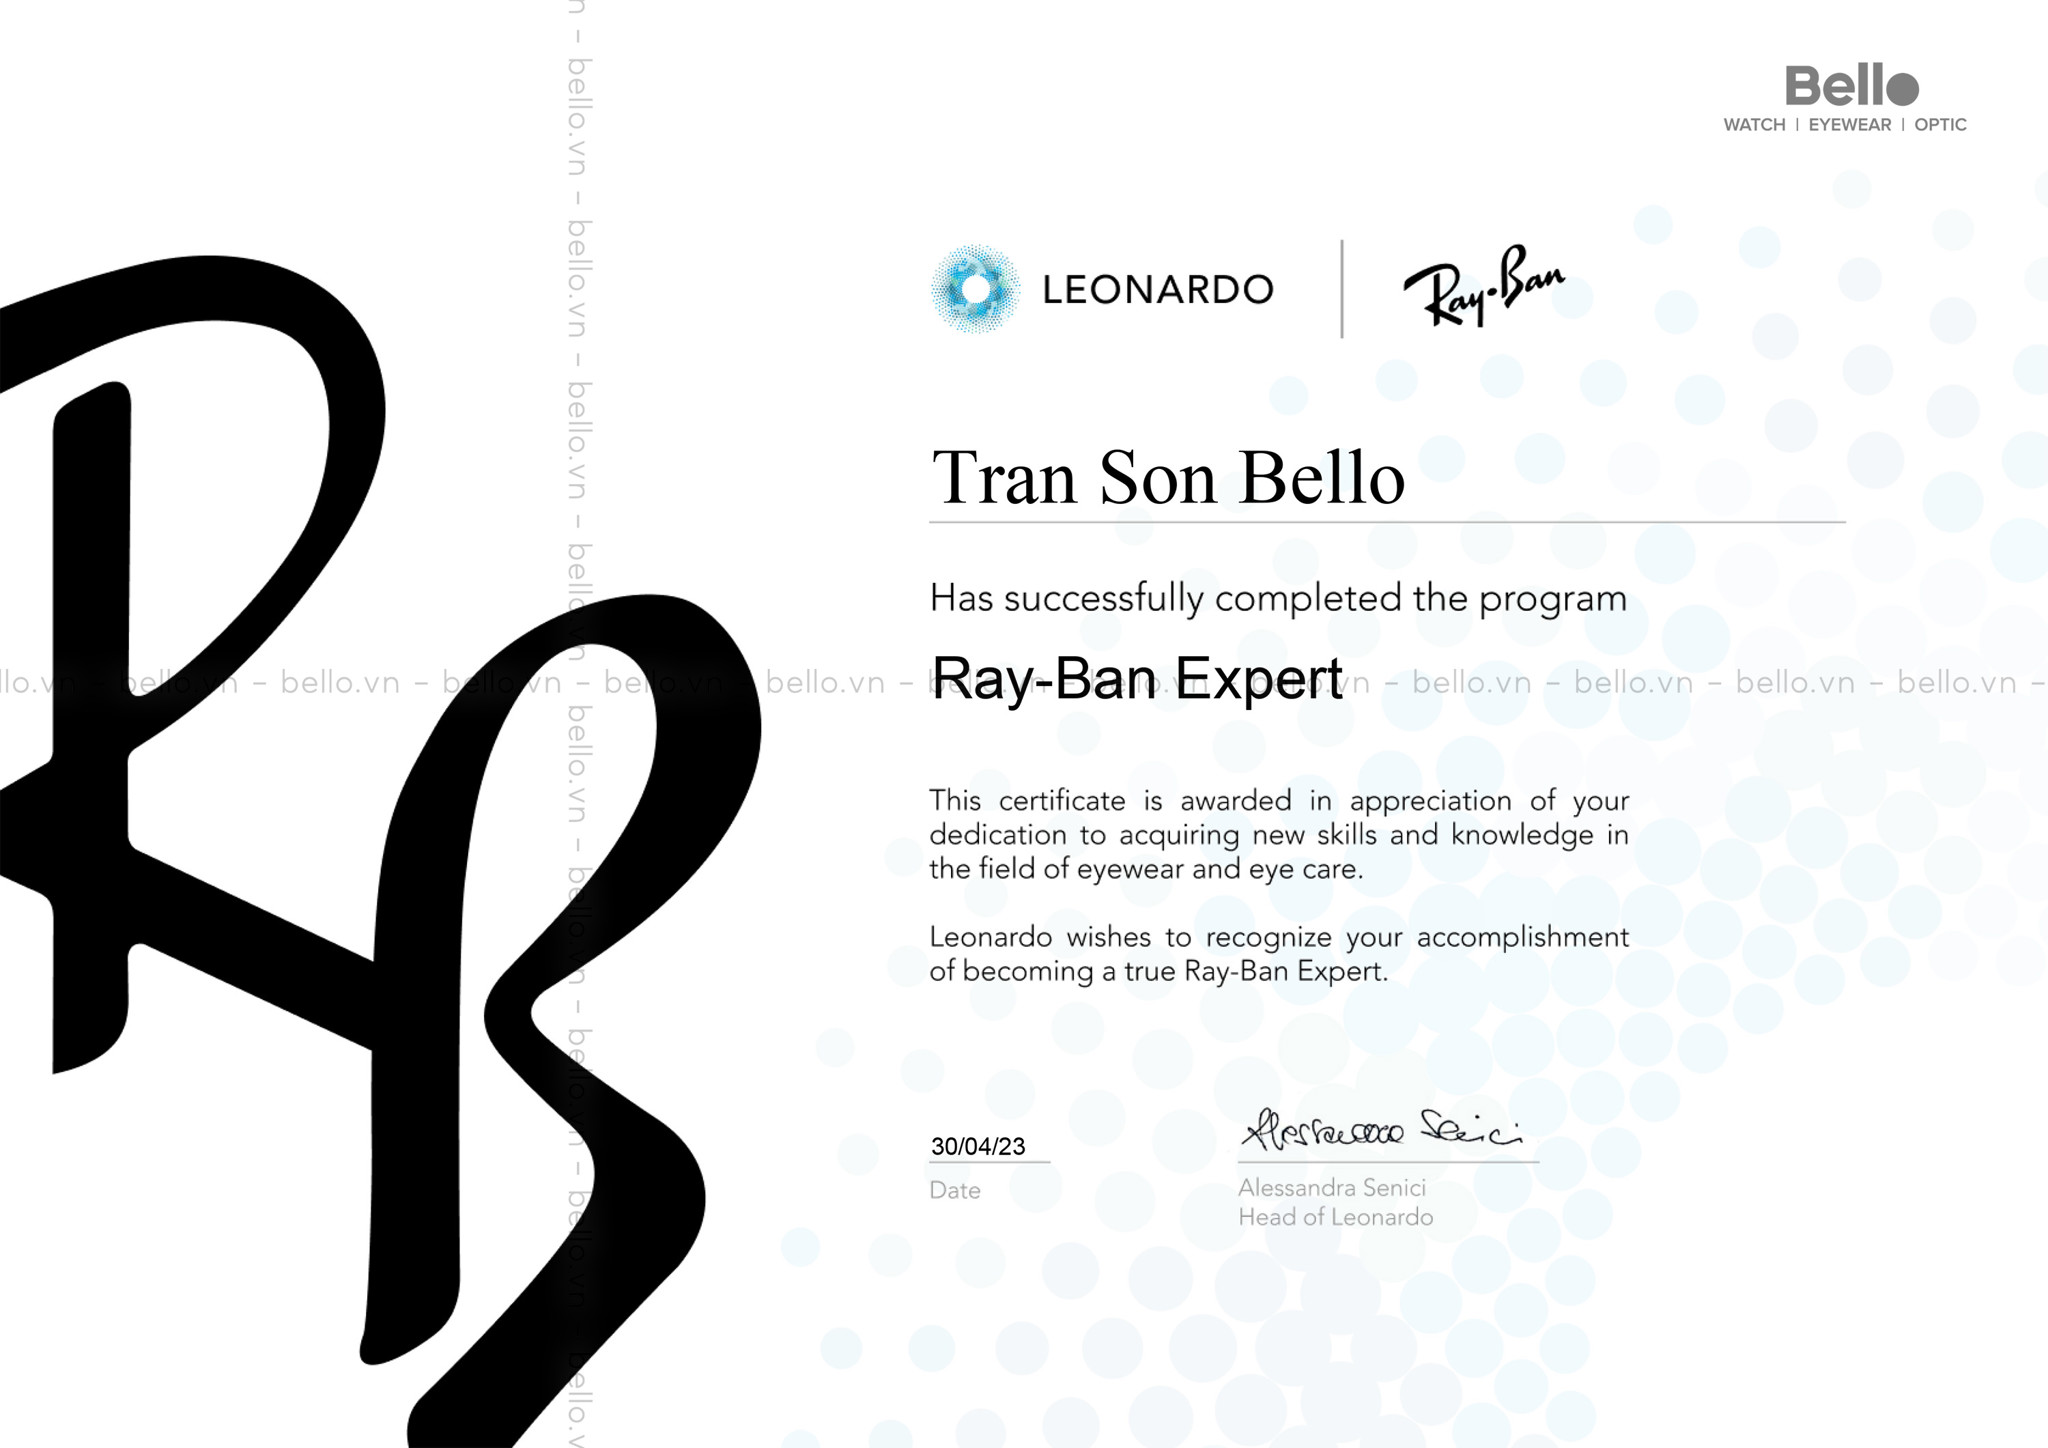 Chứng nhận Chuyên gia Ray-Ban - Ray-Ban Expert từ EssilorLuxottica